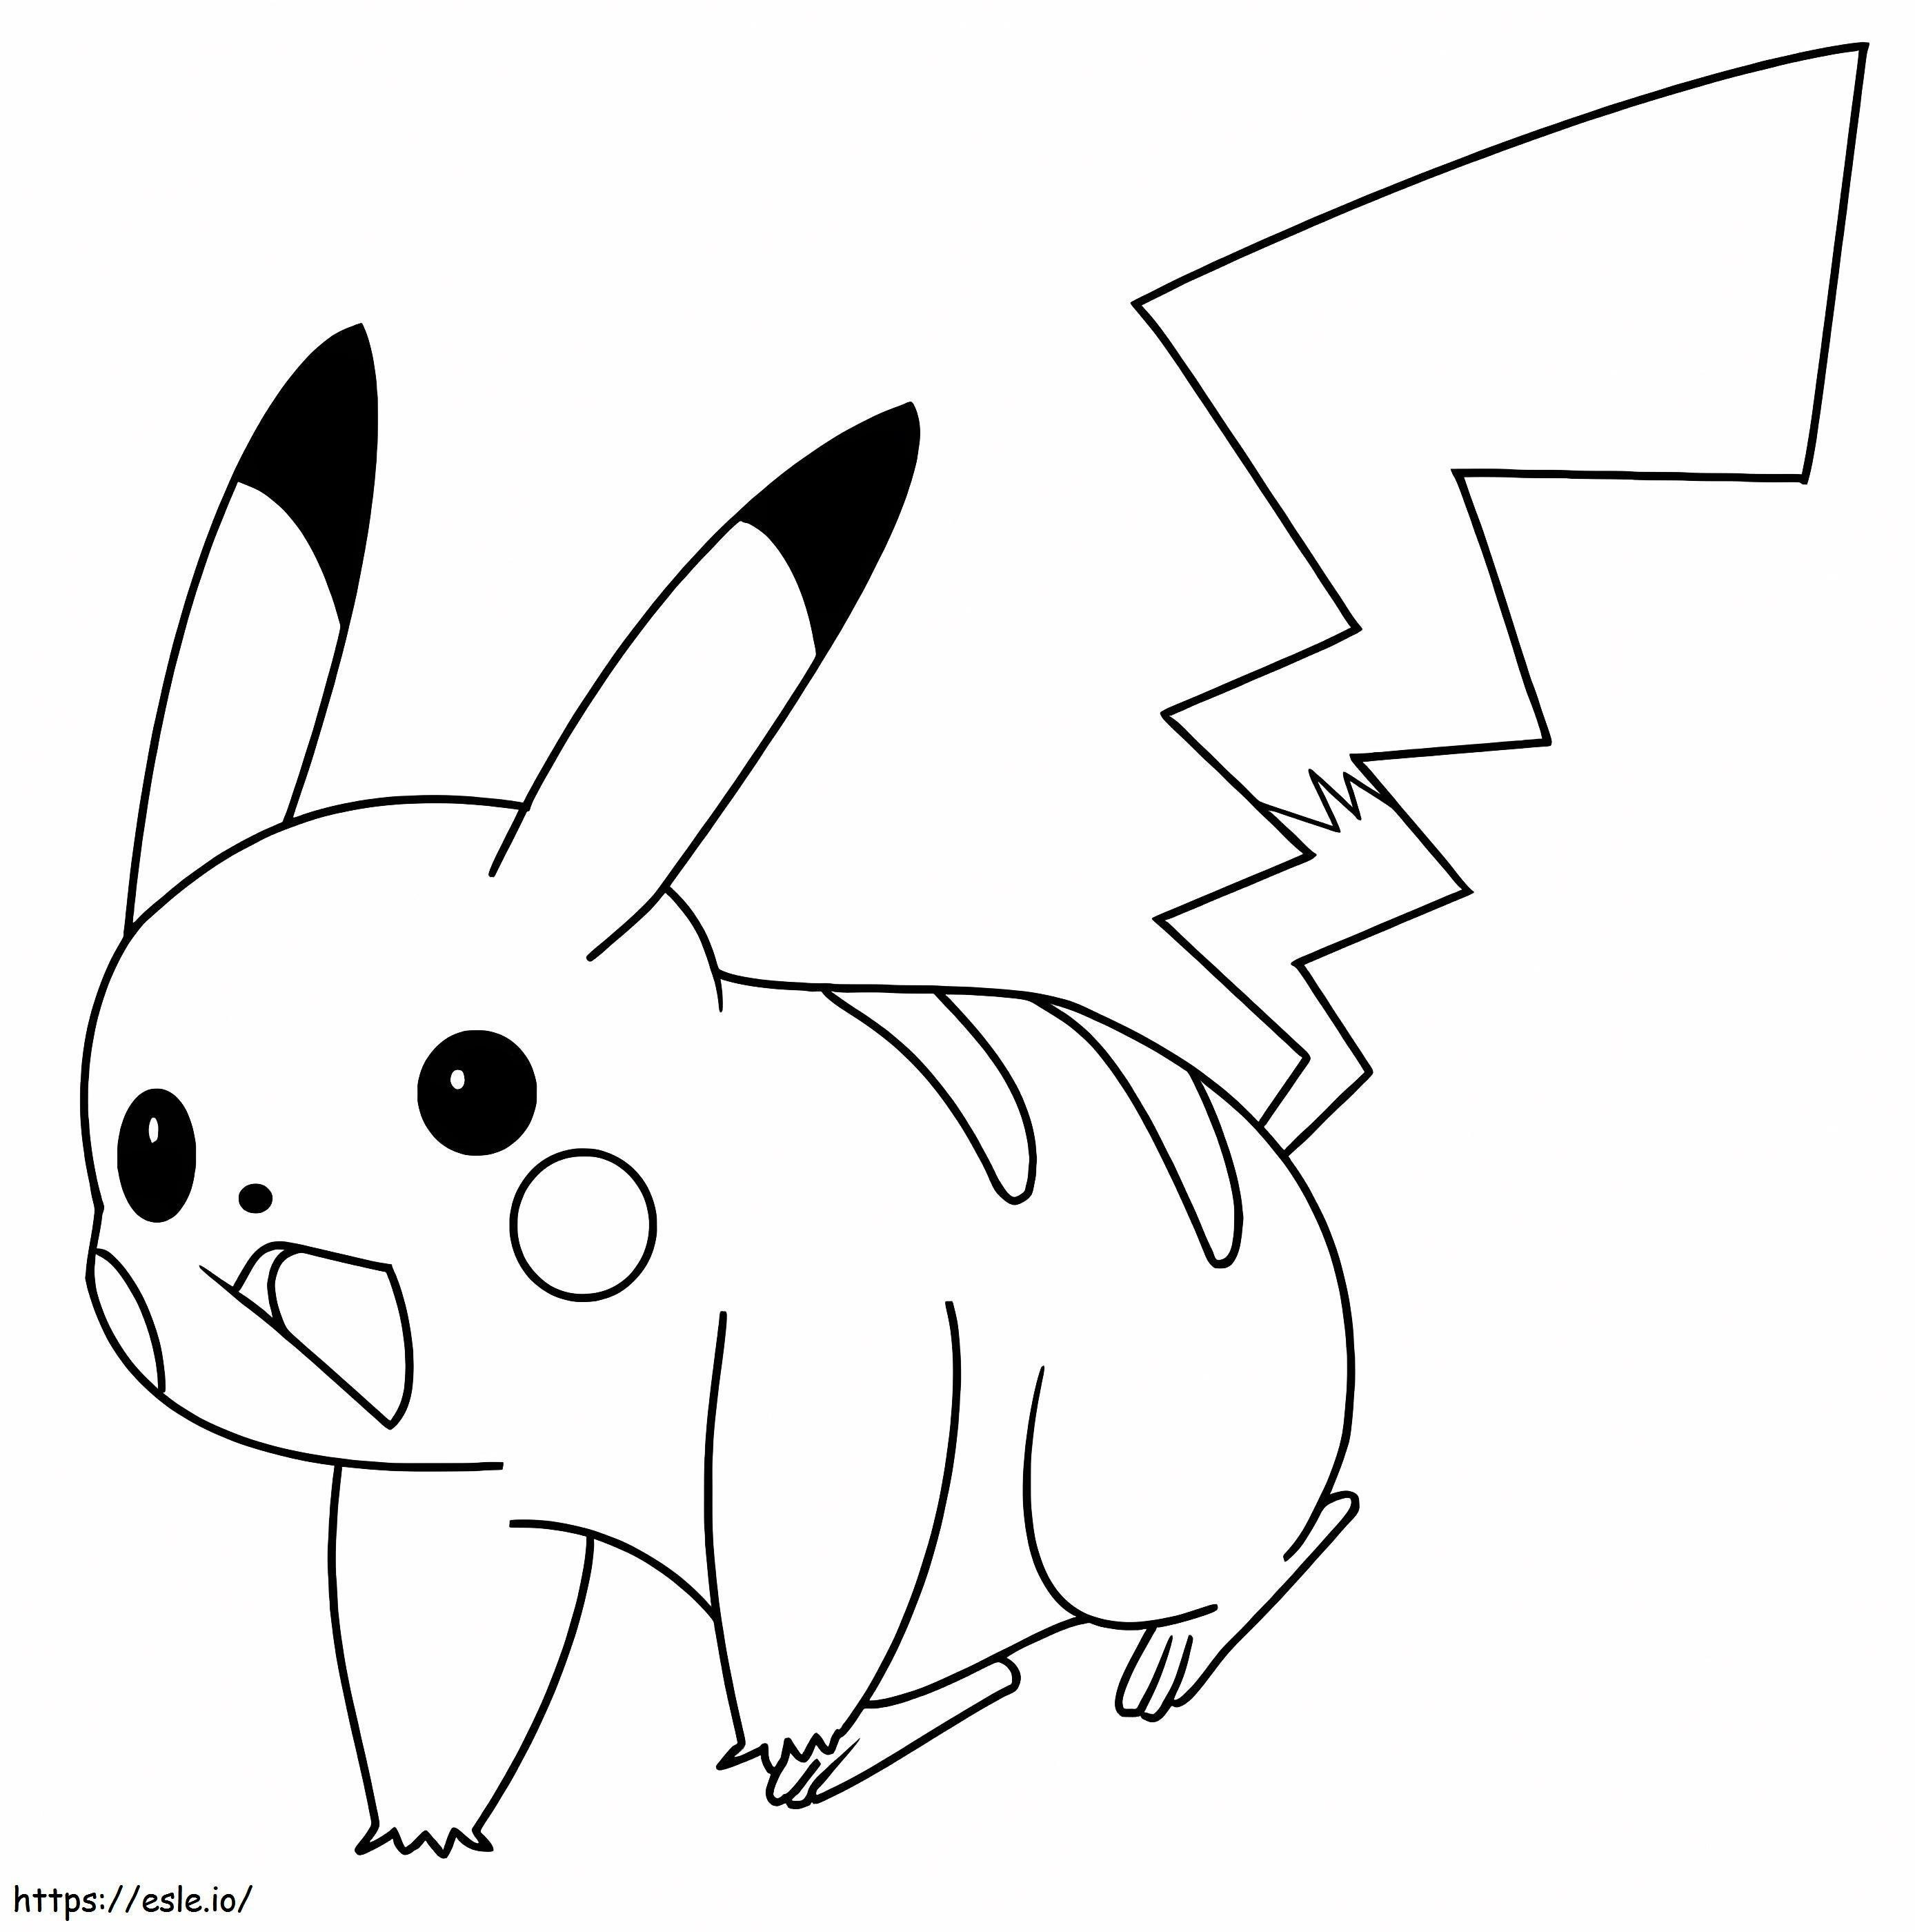 Überraschtes Pikachu ausmalbilder